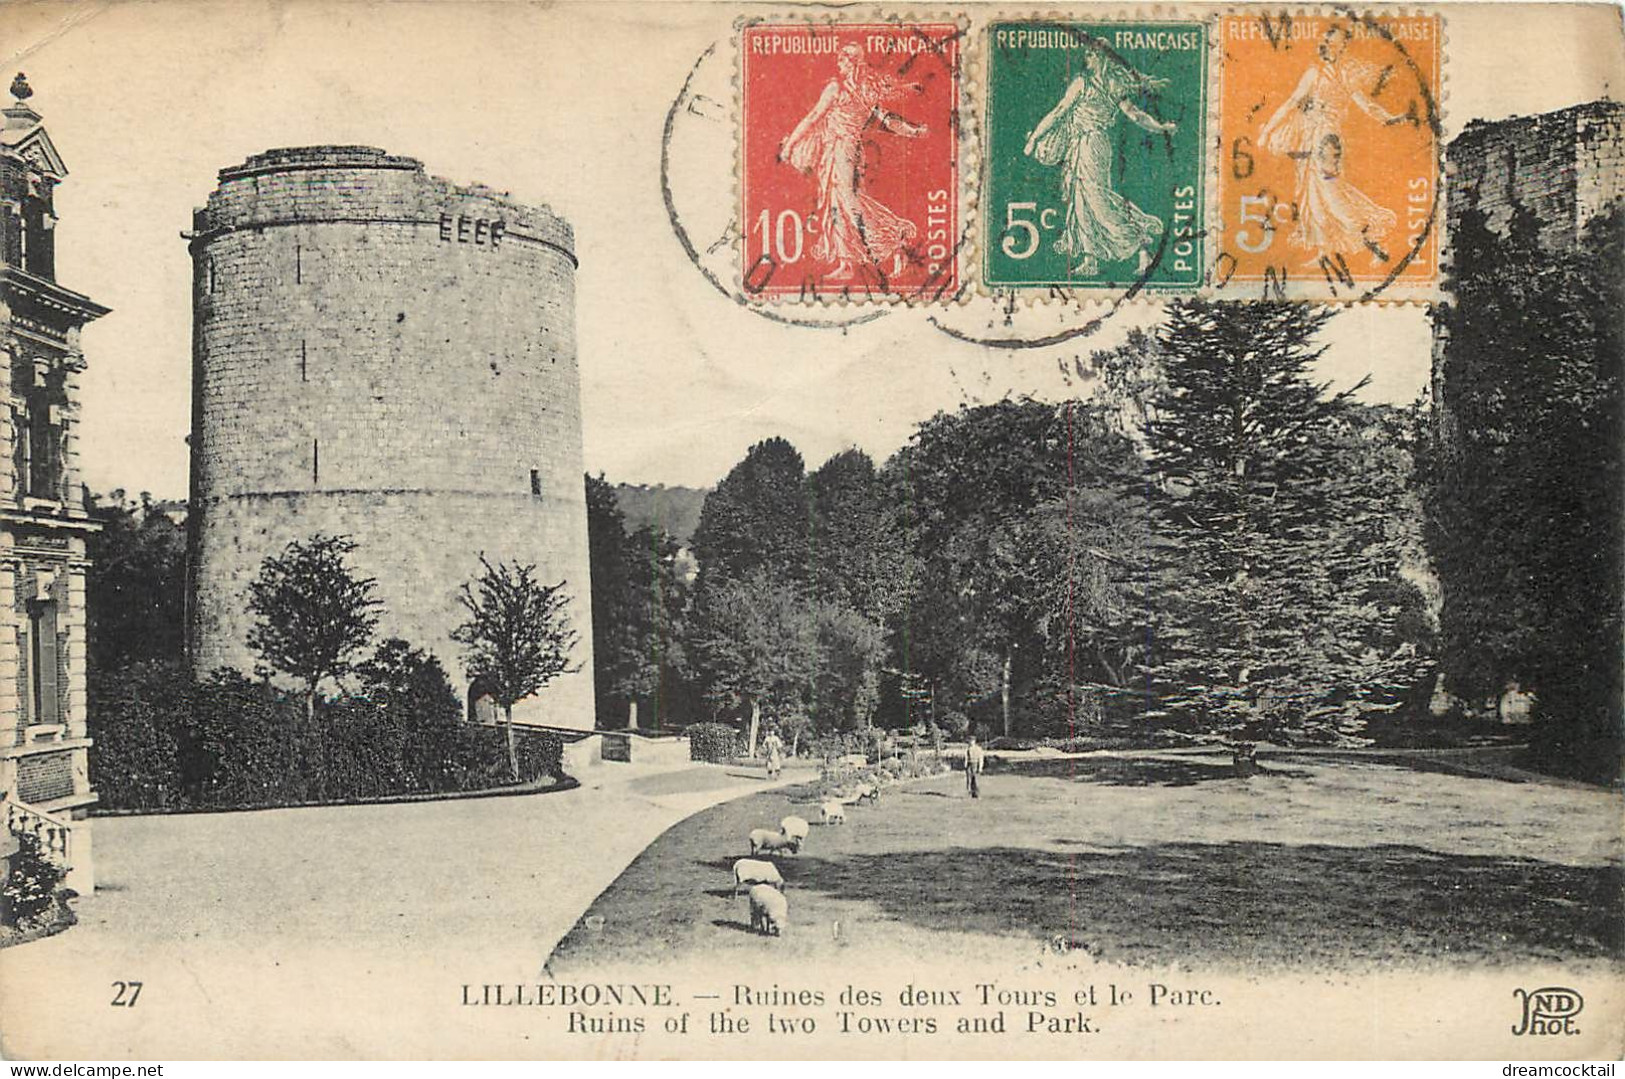 (S) Superbe LOT n°9 de 50 cartes postales anciennes France régionalisme